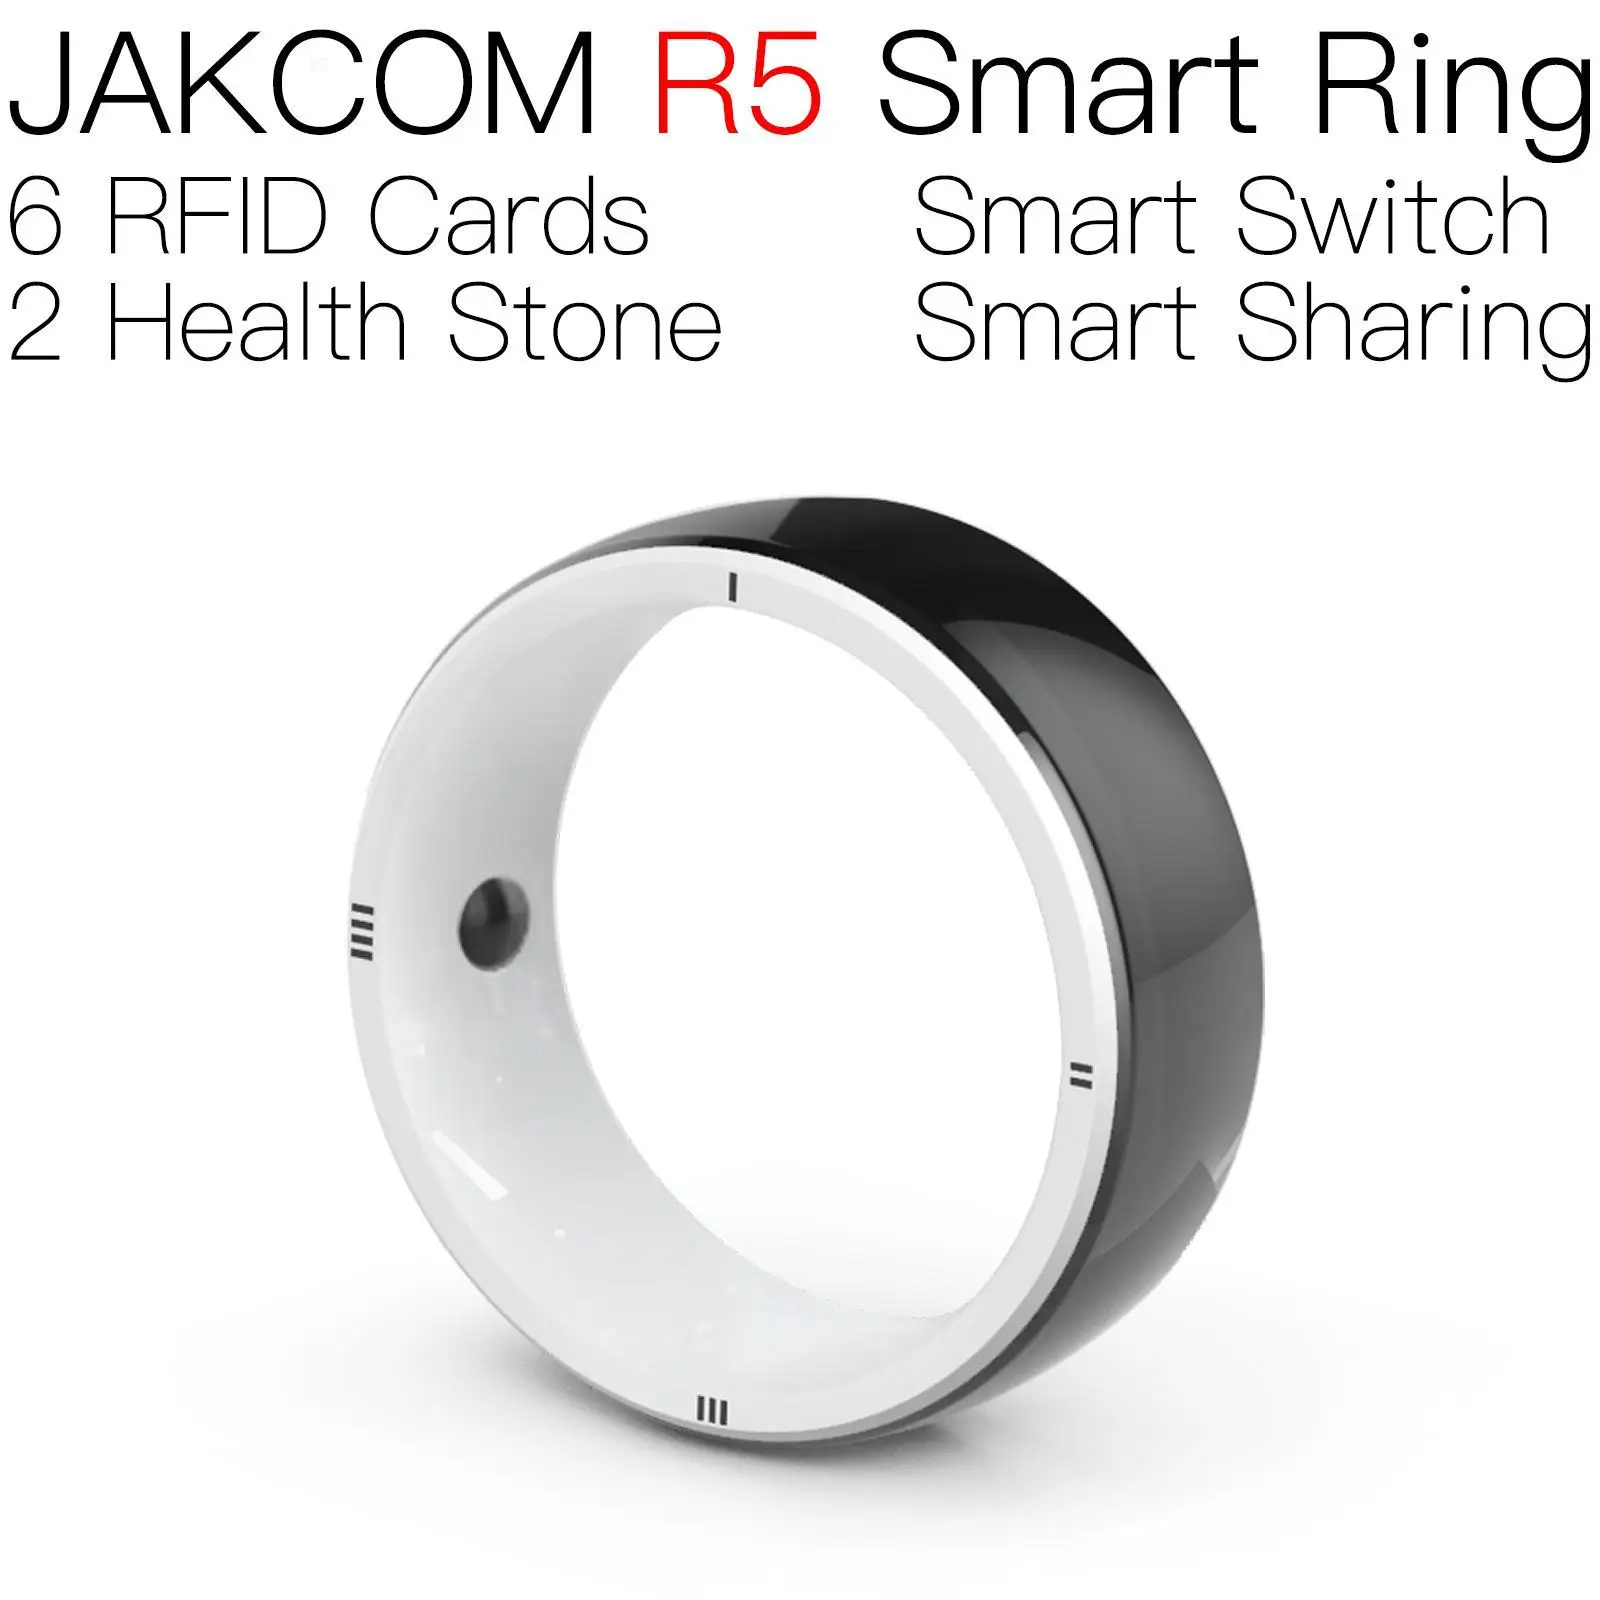 

Умное кольцо JAKCOM R5, лучше, чем rfid, большой радиус действия, счетчик карт УВЧ, перезаписываемый мини, без чипа, фреза ntag215